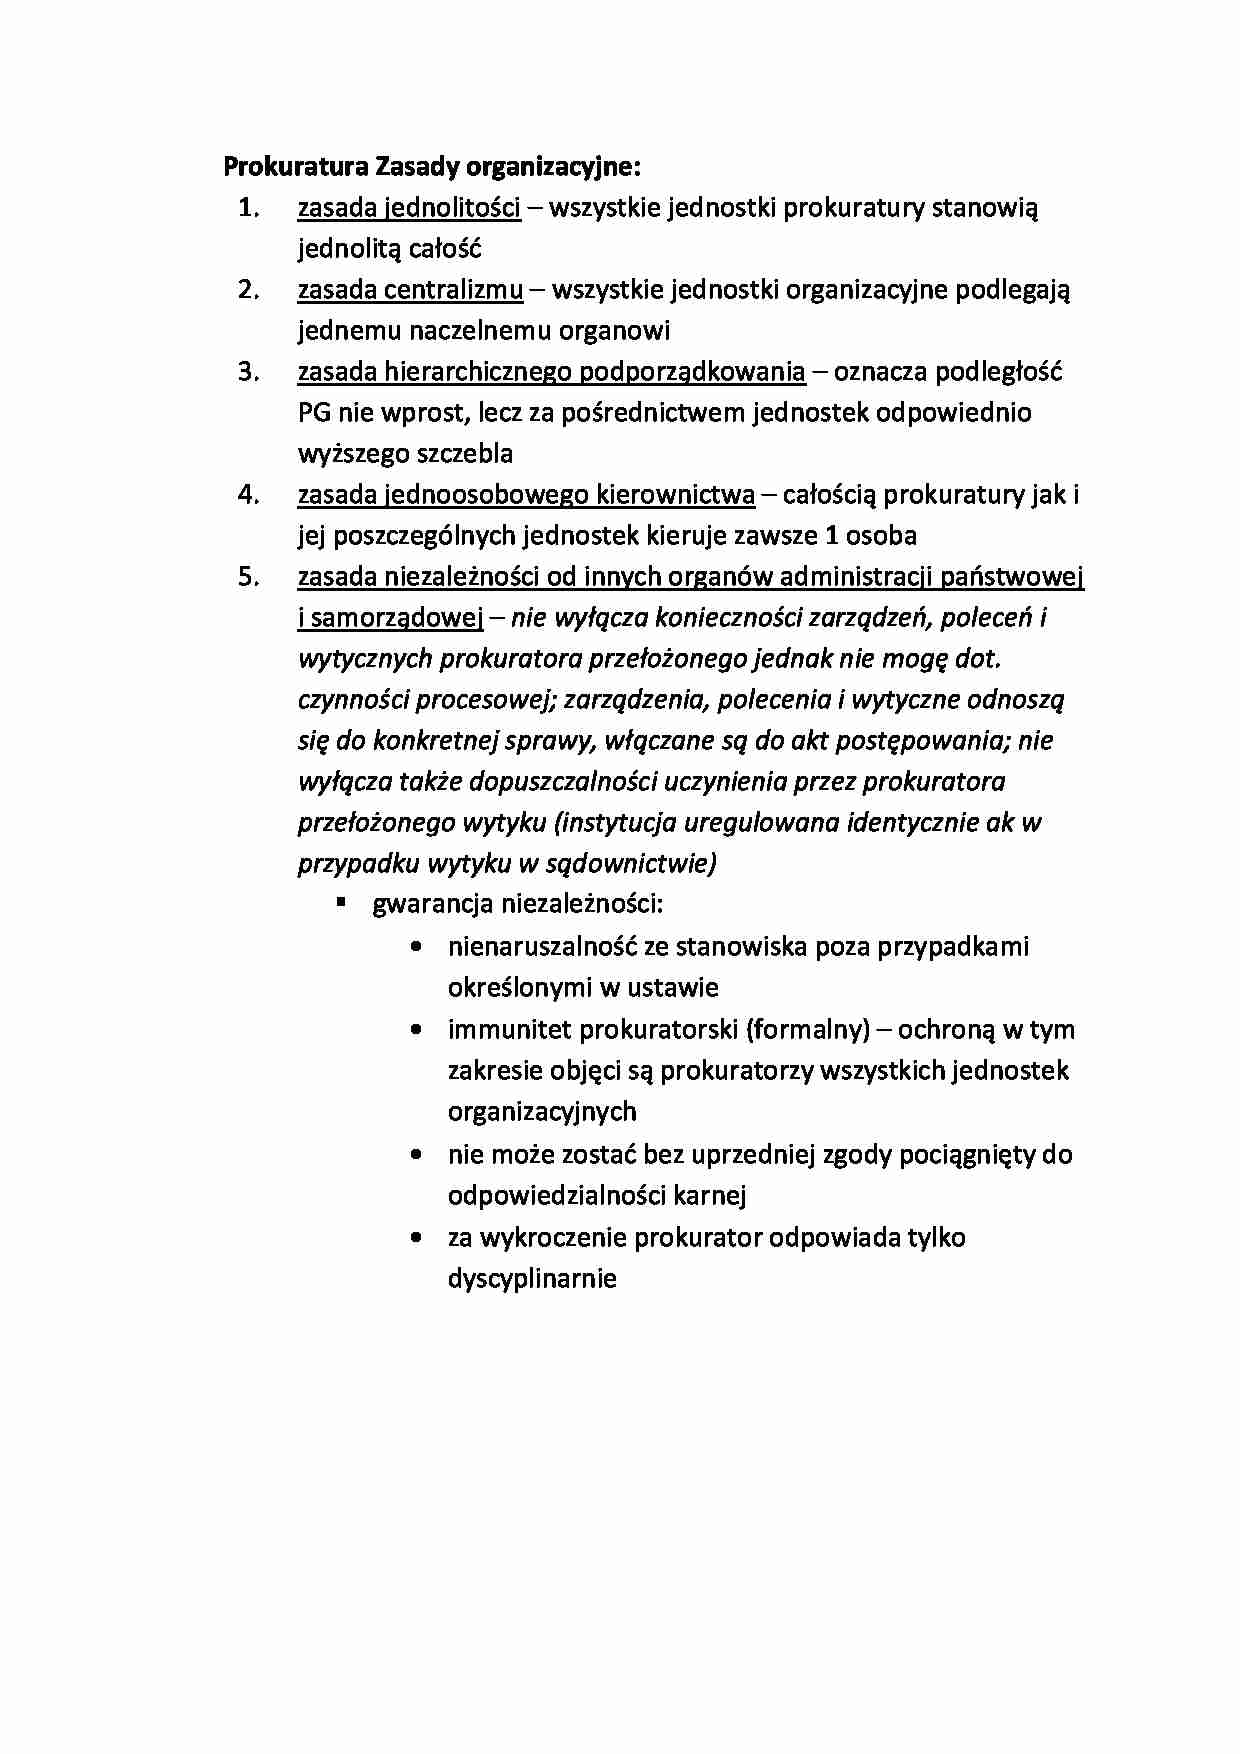 Prokuratura Zasady organizacyjne - strona 1